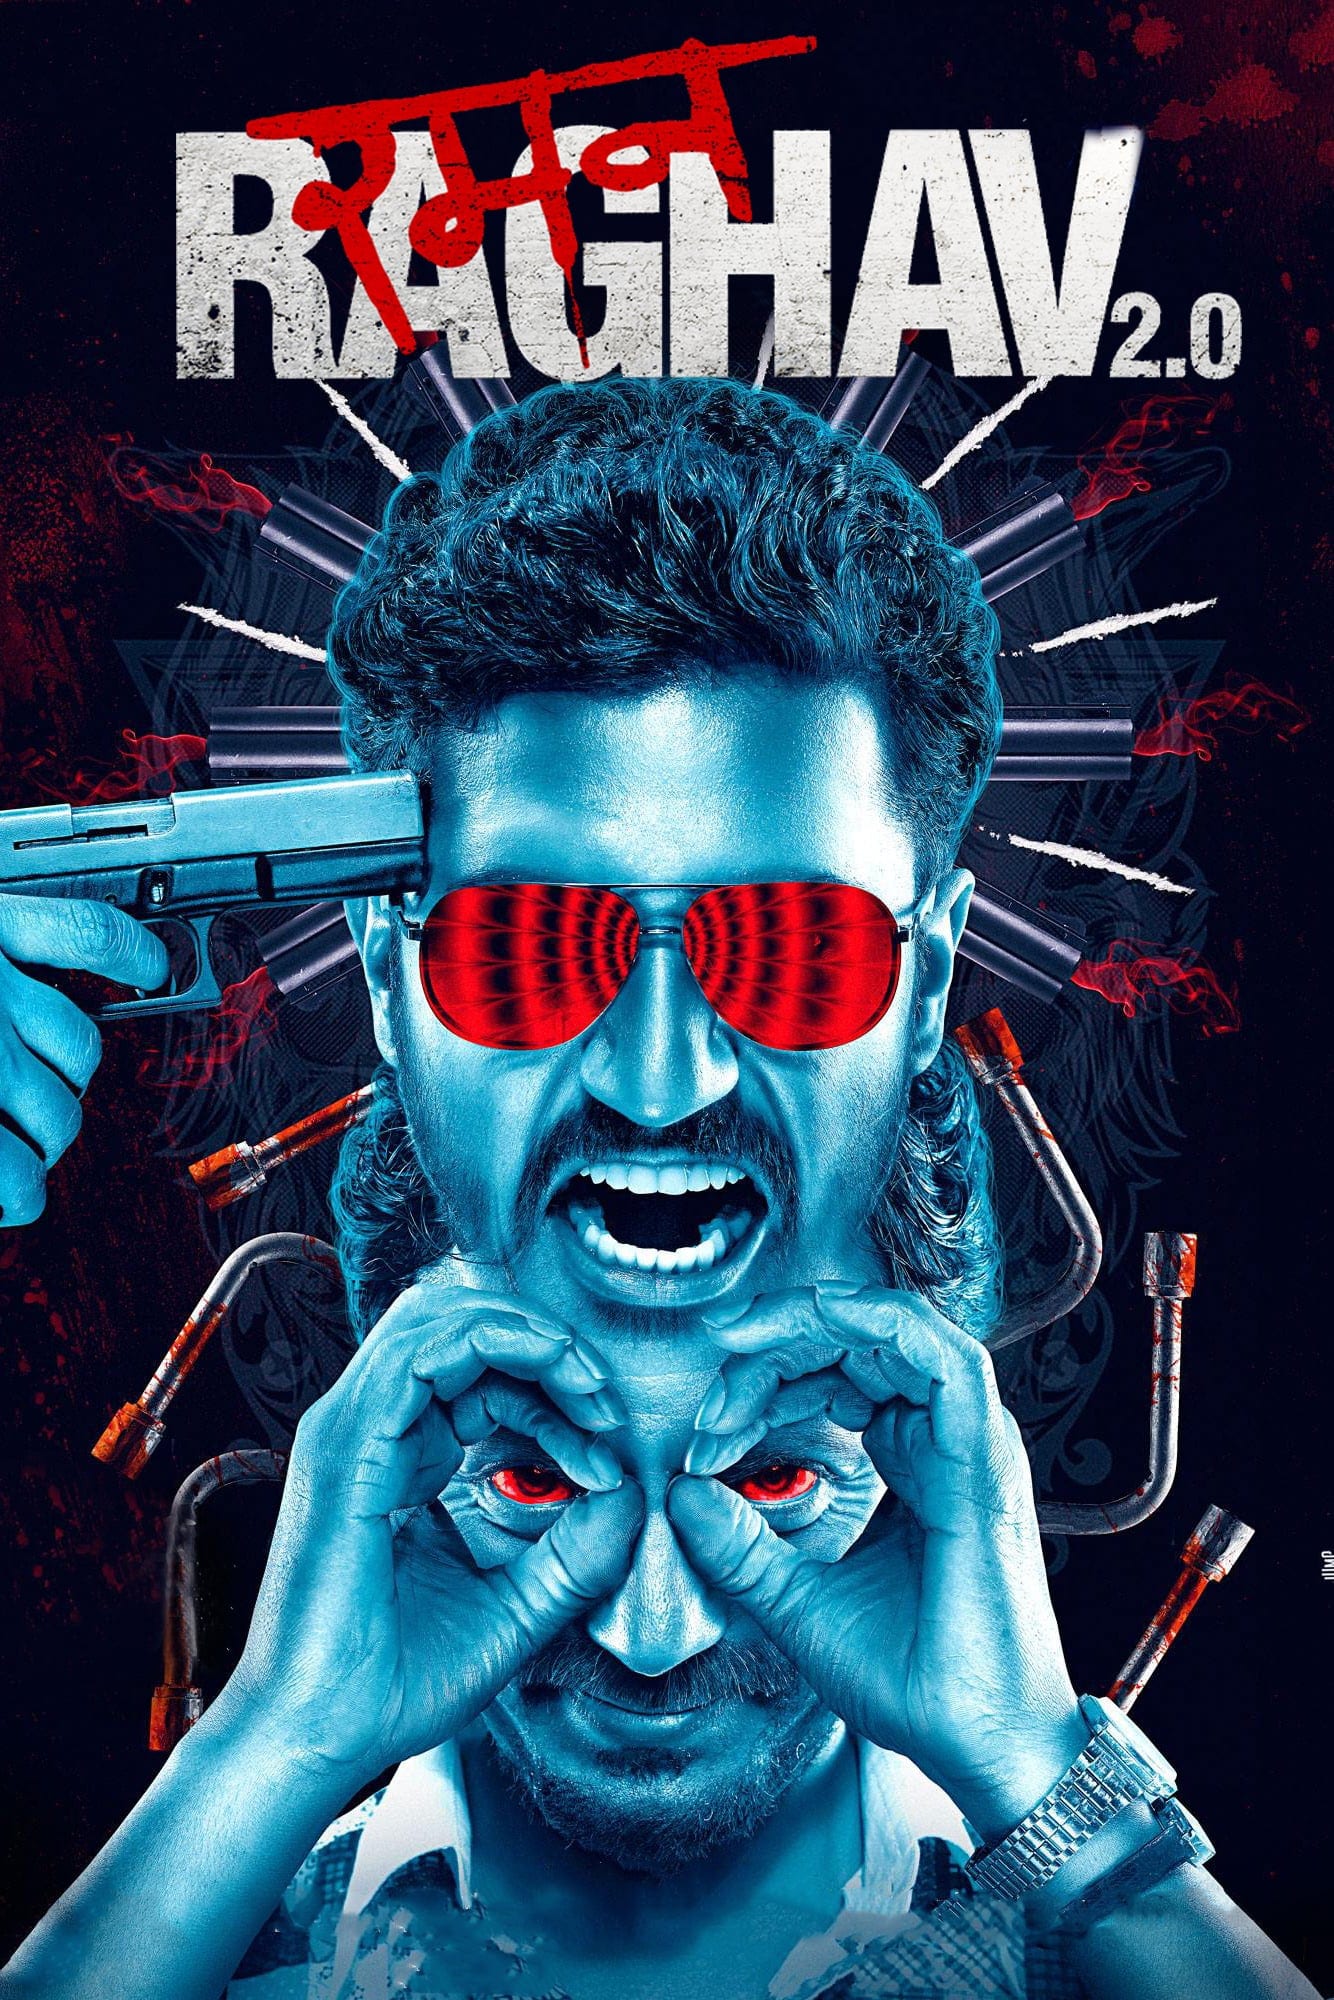 Poster for the movie "Raman Raghav 2.0"